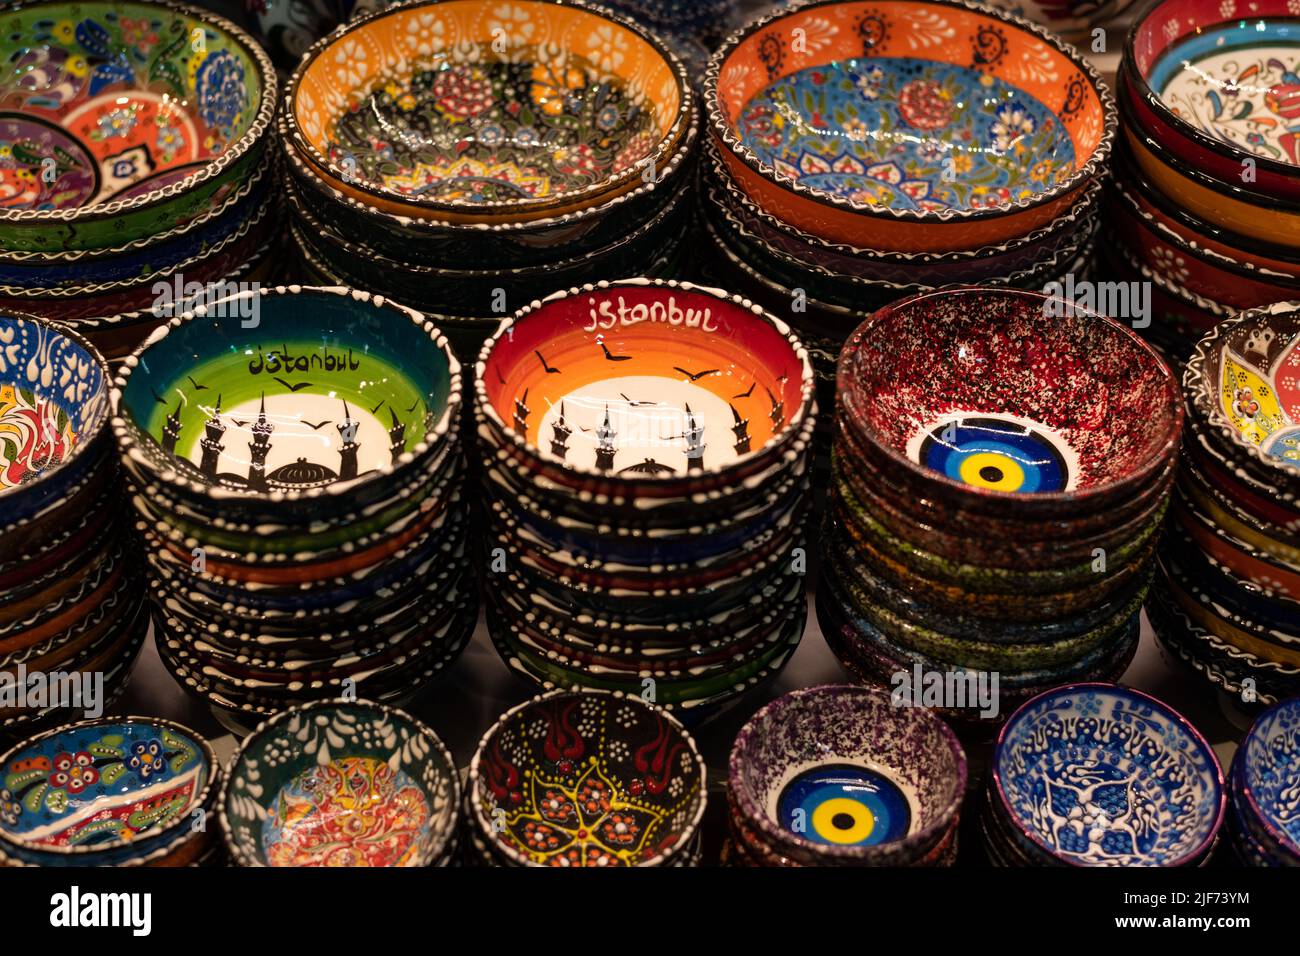 Souvenirs d'Istanbul - bols en céramique de style Iznik - Grand Bazar, Istanbul, Turquie Banque D'Images